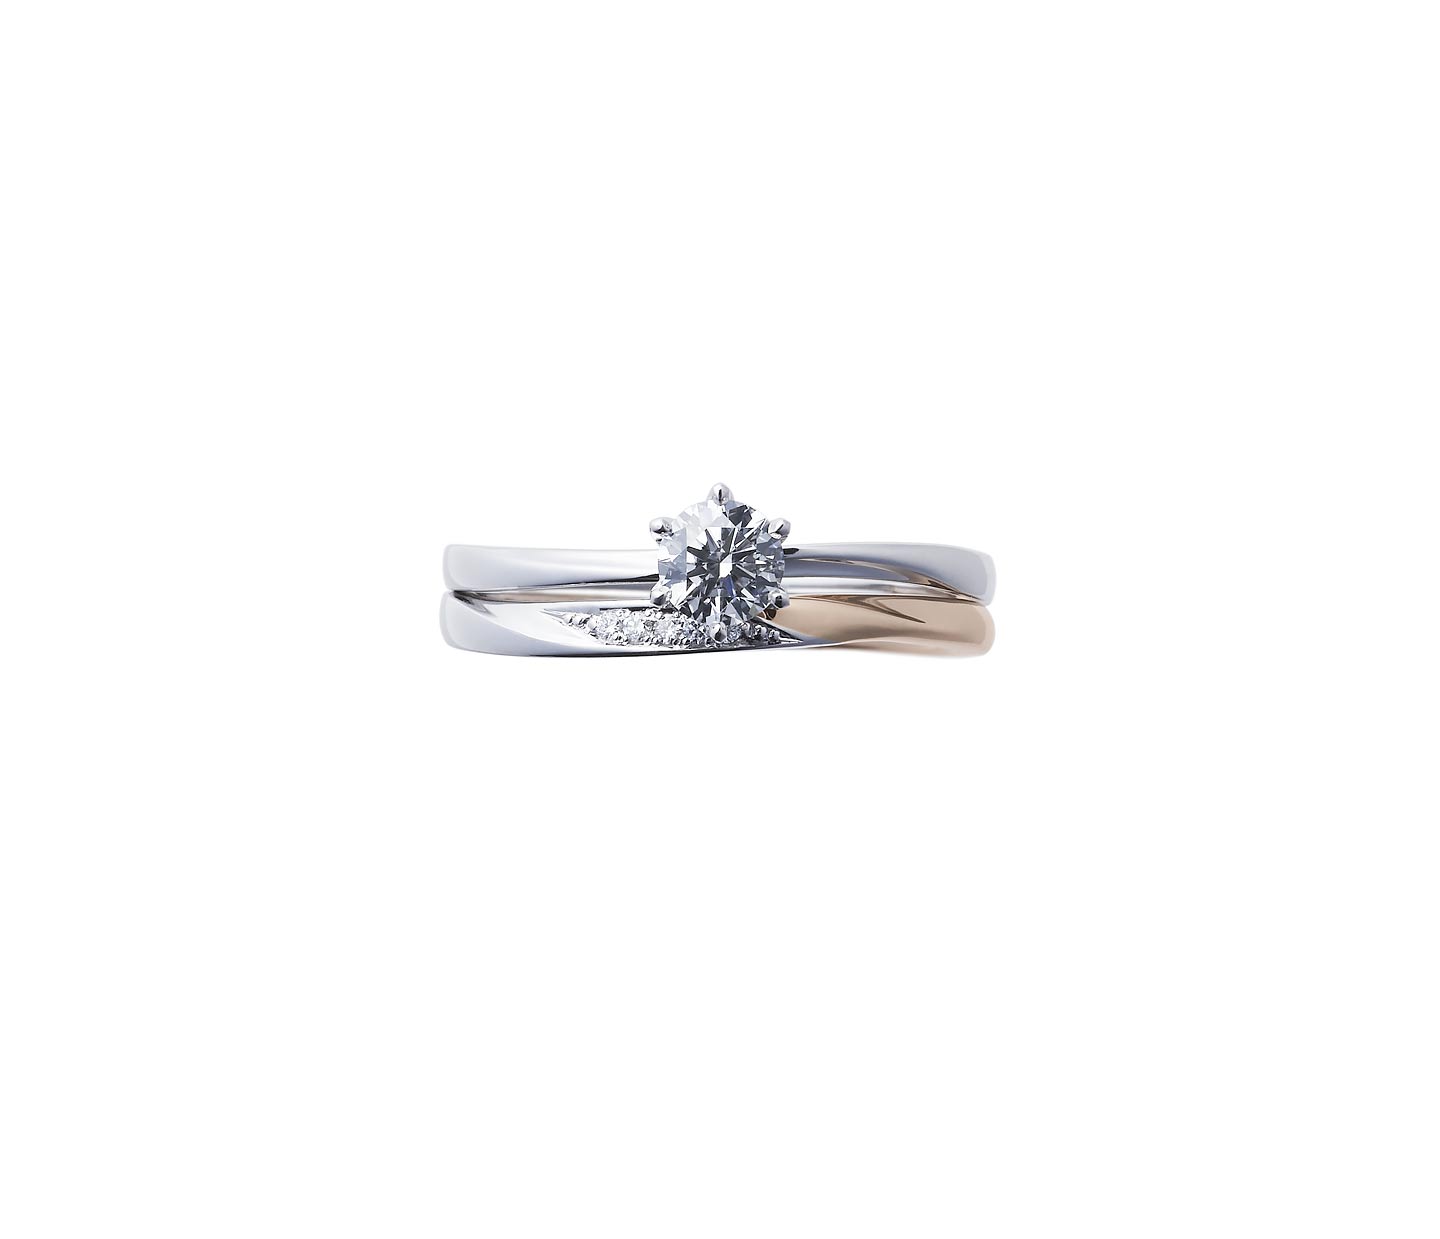 婚約指輪“花雪” 結婚指輪“雪佳景”とのセットリング